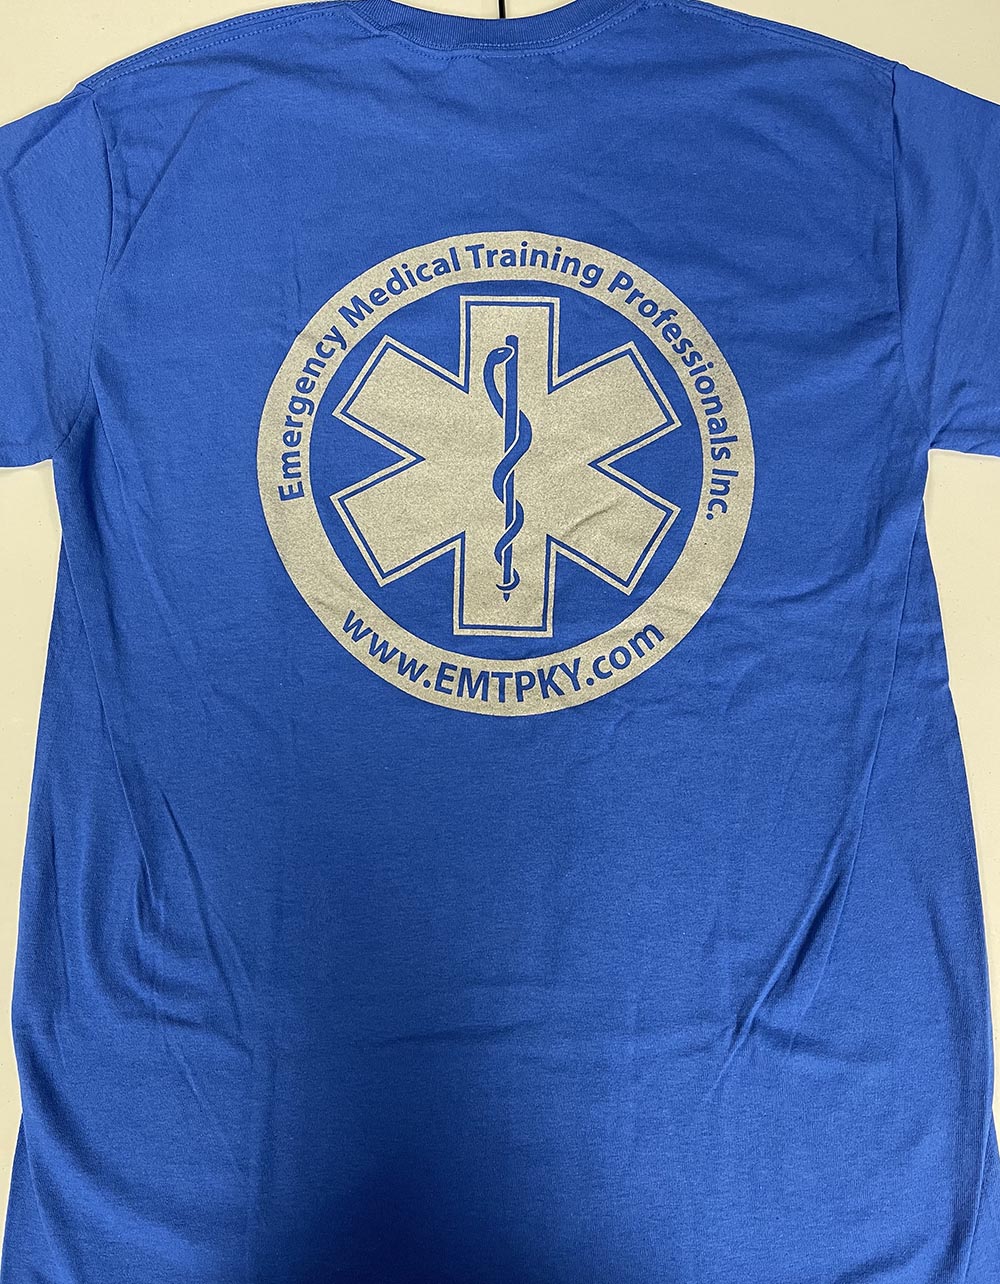 EMTPKY Logo Blue - Emergency Medical Training Professionals, Inc.